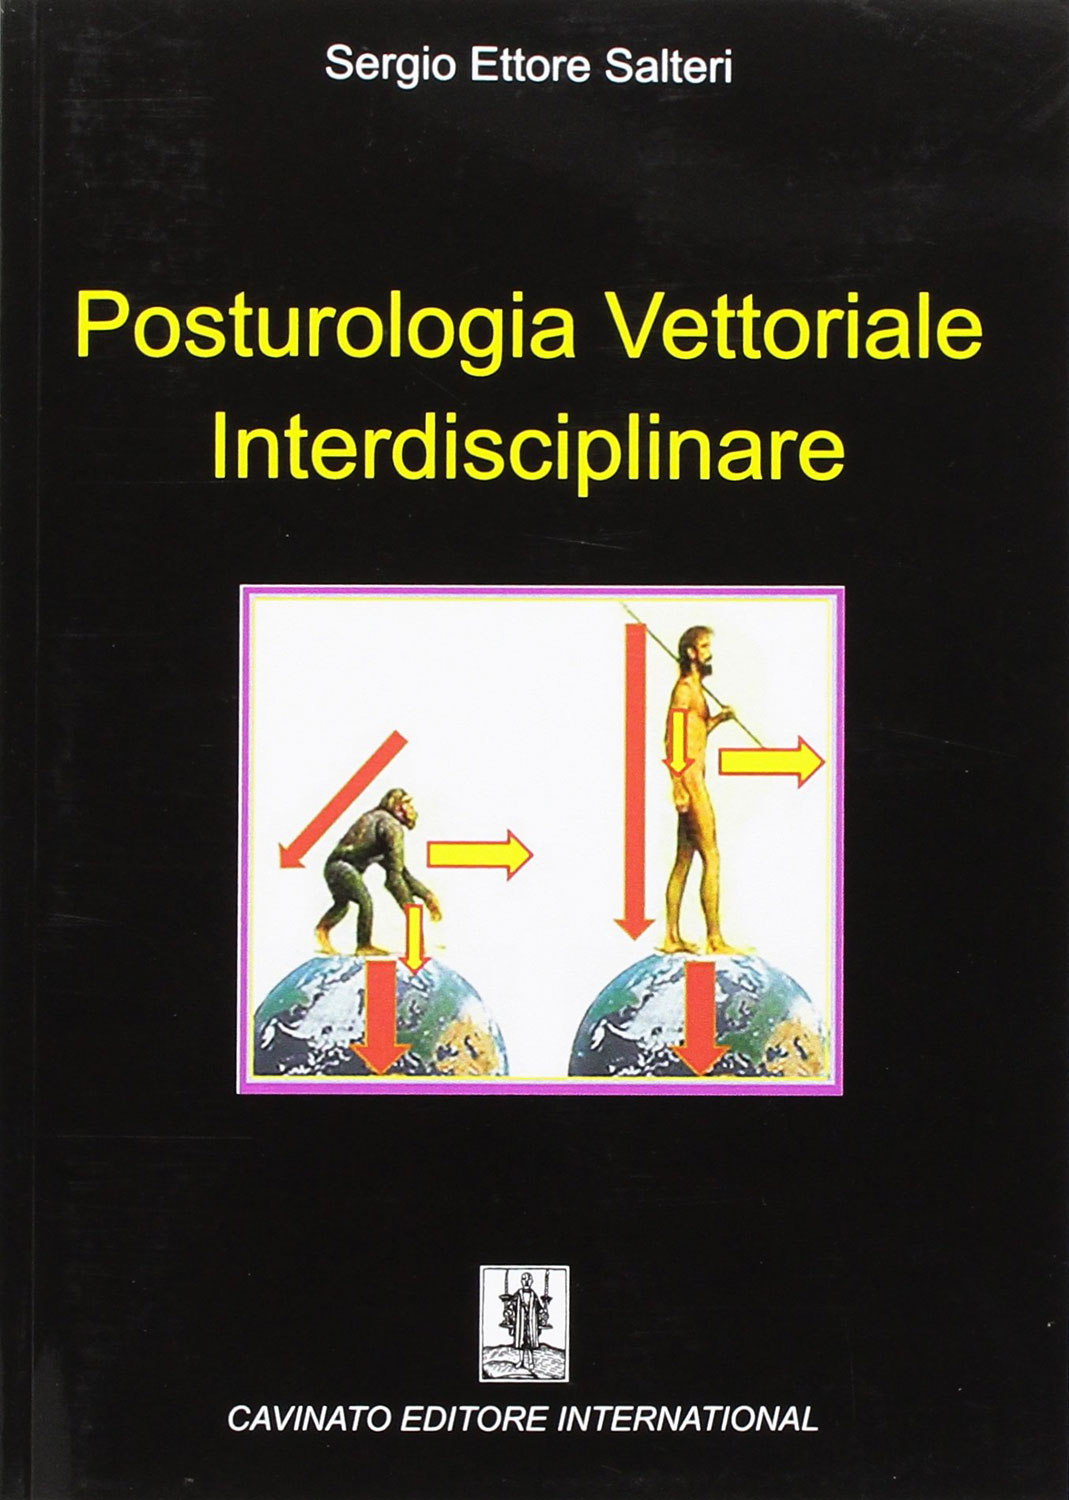 Libri Salteri Sergio Ettore - Posturologia Vettoriale Interdisciplinare NUOVO SIGILLATO, EDIZIONE DEL 01/10/2016 SUBITO DISPONIBILE